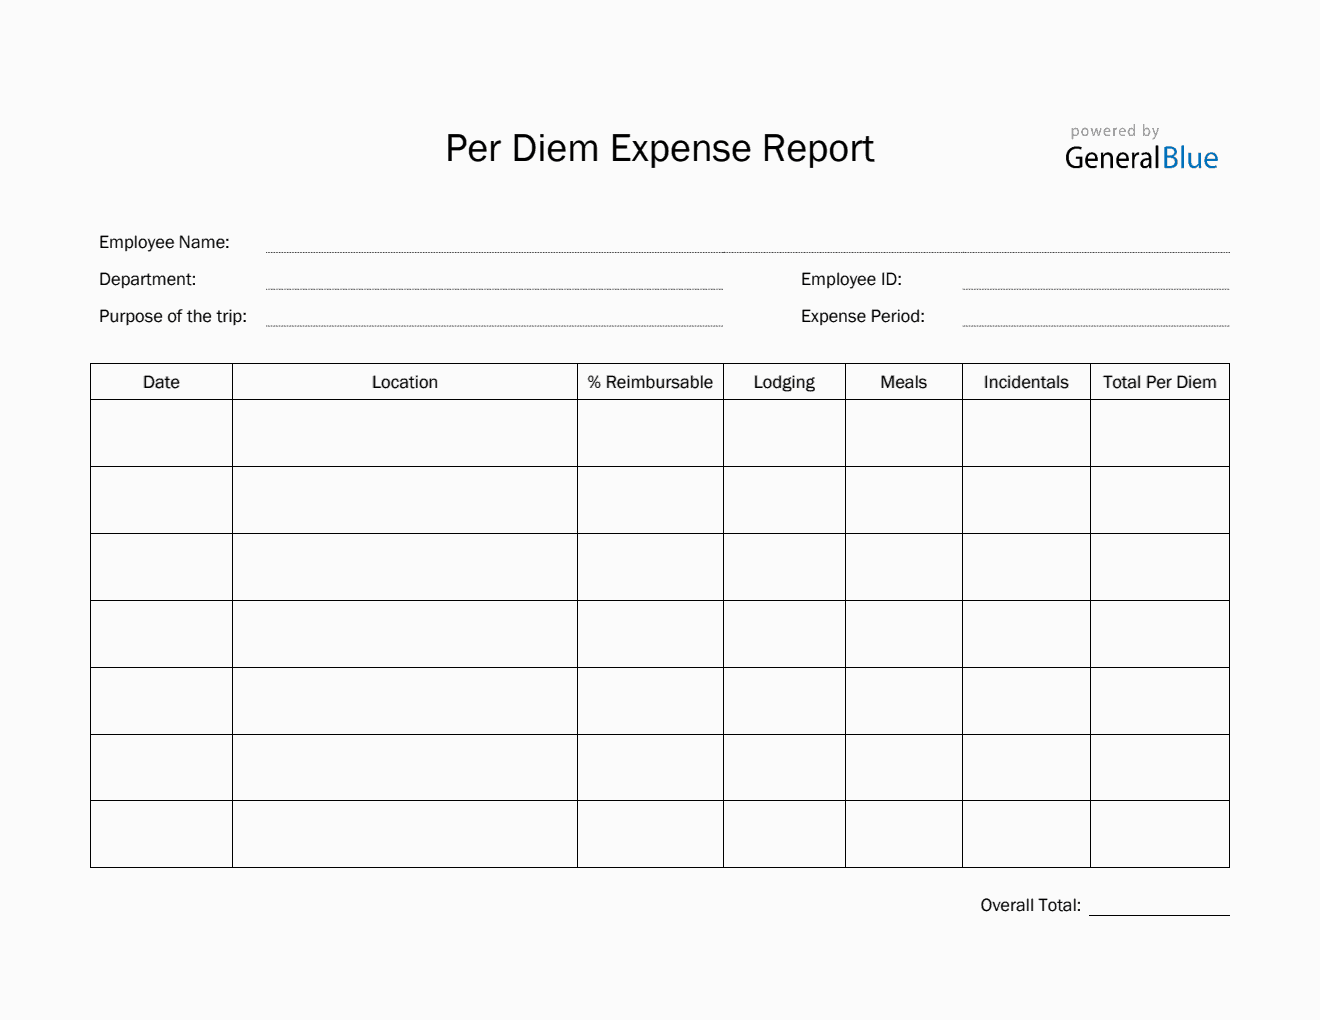 Per Diem Expense Report Template in PDF (Striped)